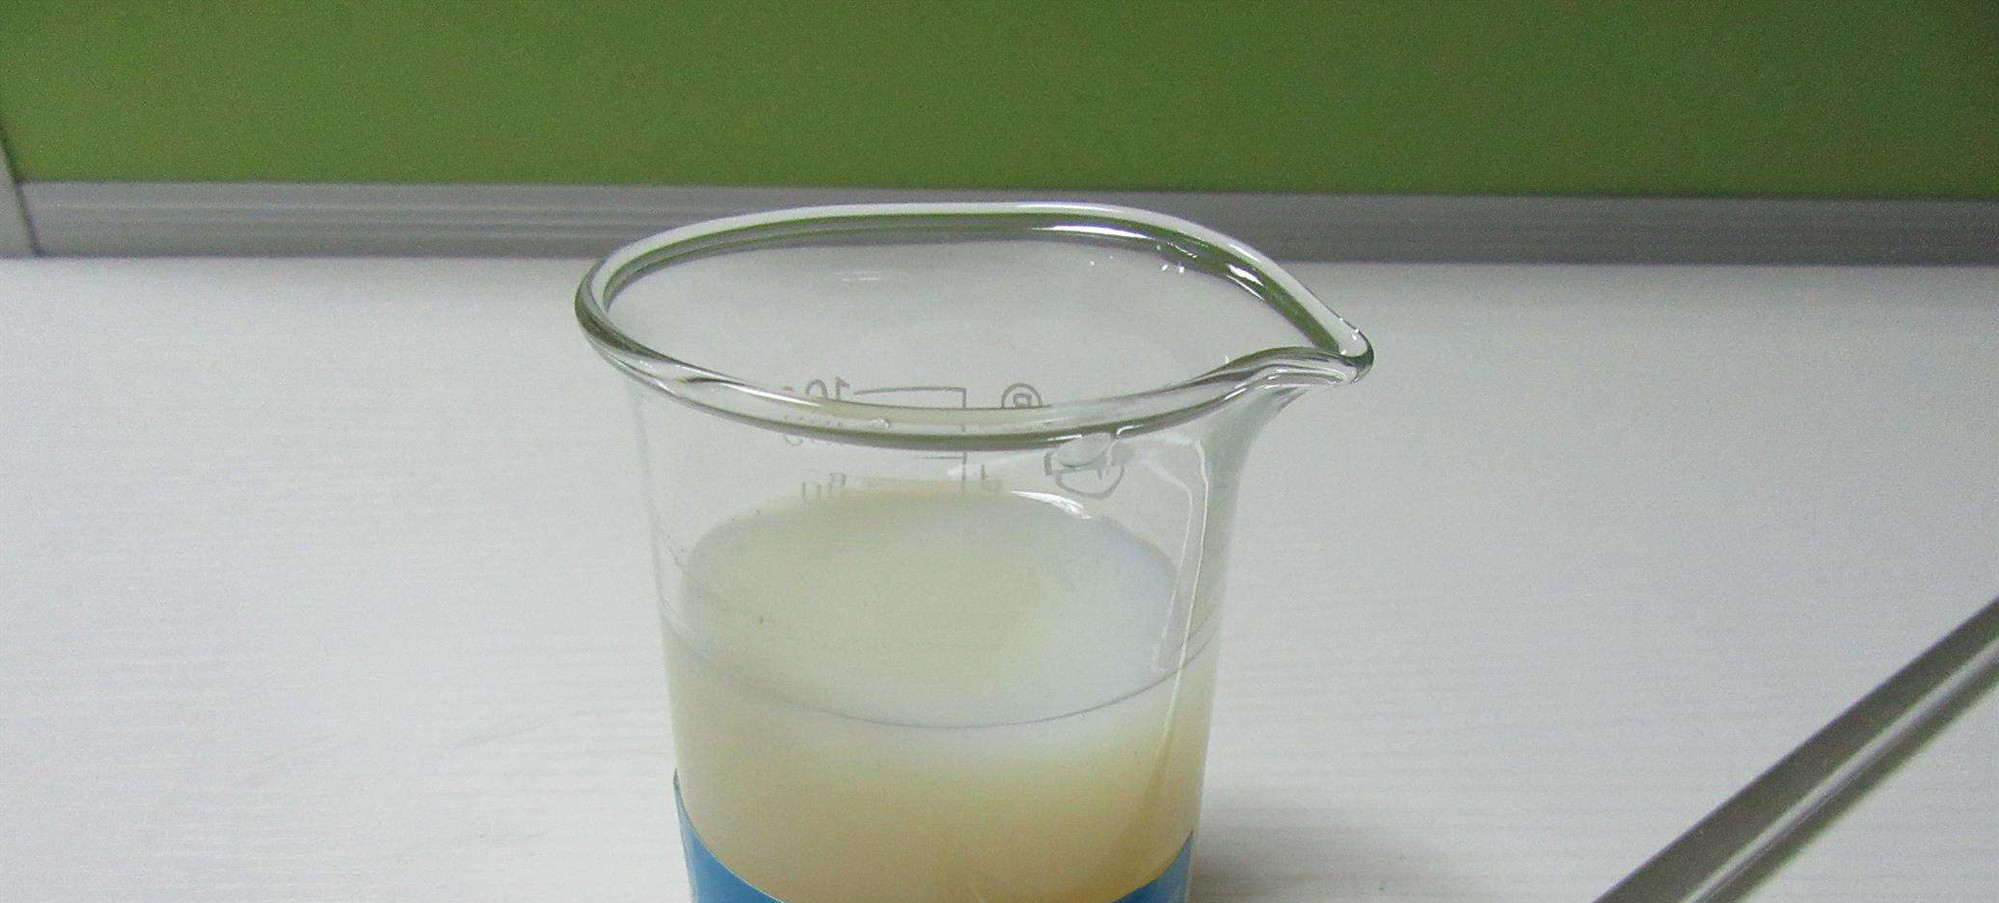 水性树脂起泡问题怎么解决，用哪种消泡剂好？